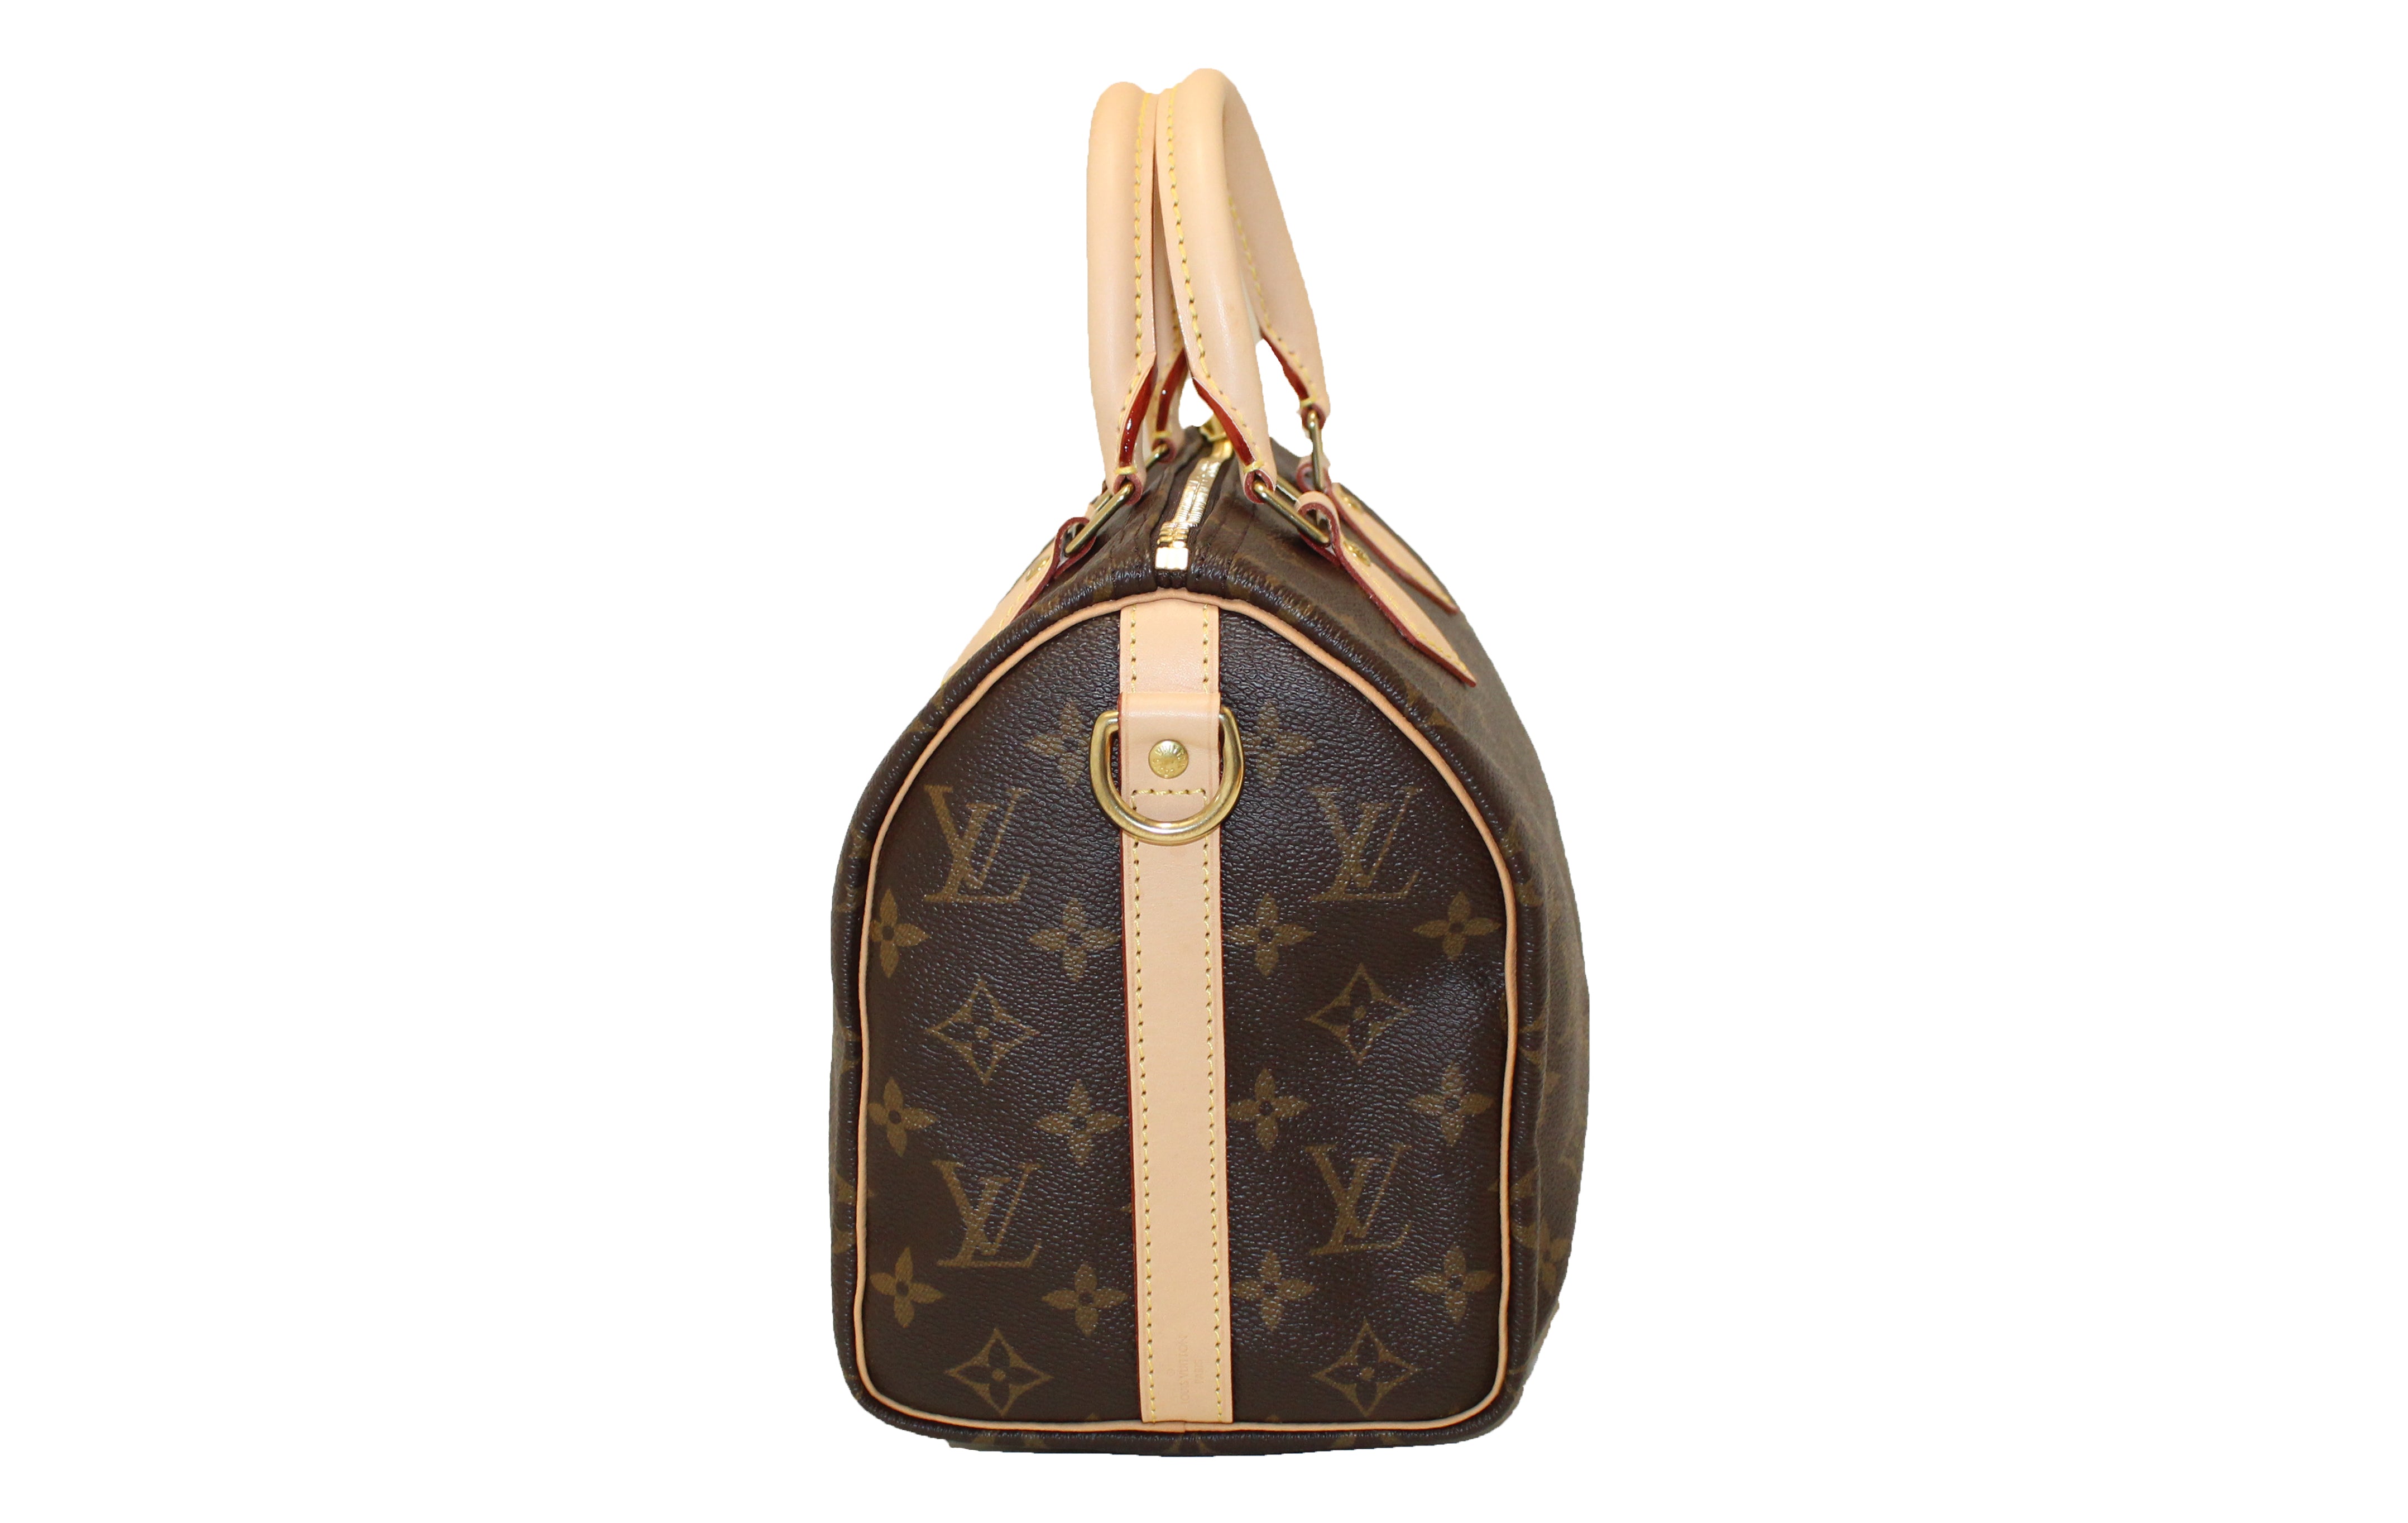 Authentic Louis Vuitton Classic Monogram Canvas Speedy 25 Bandouliere Bag